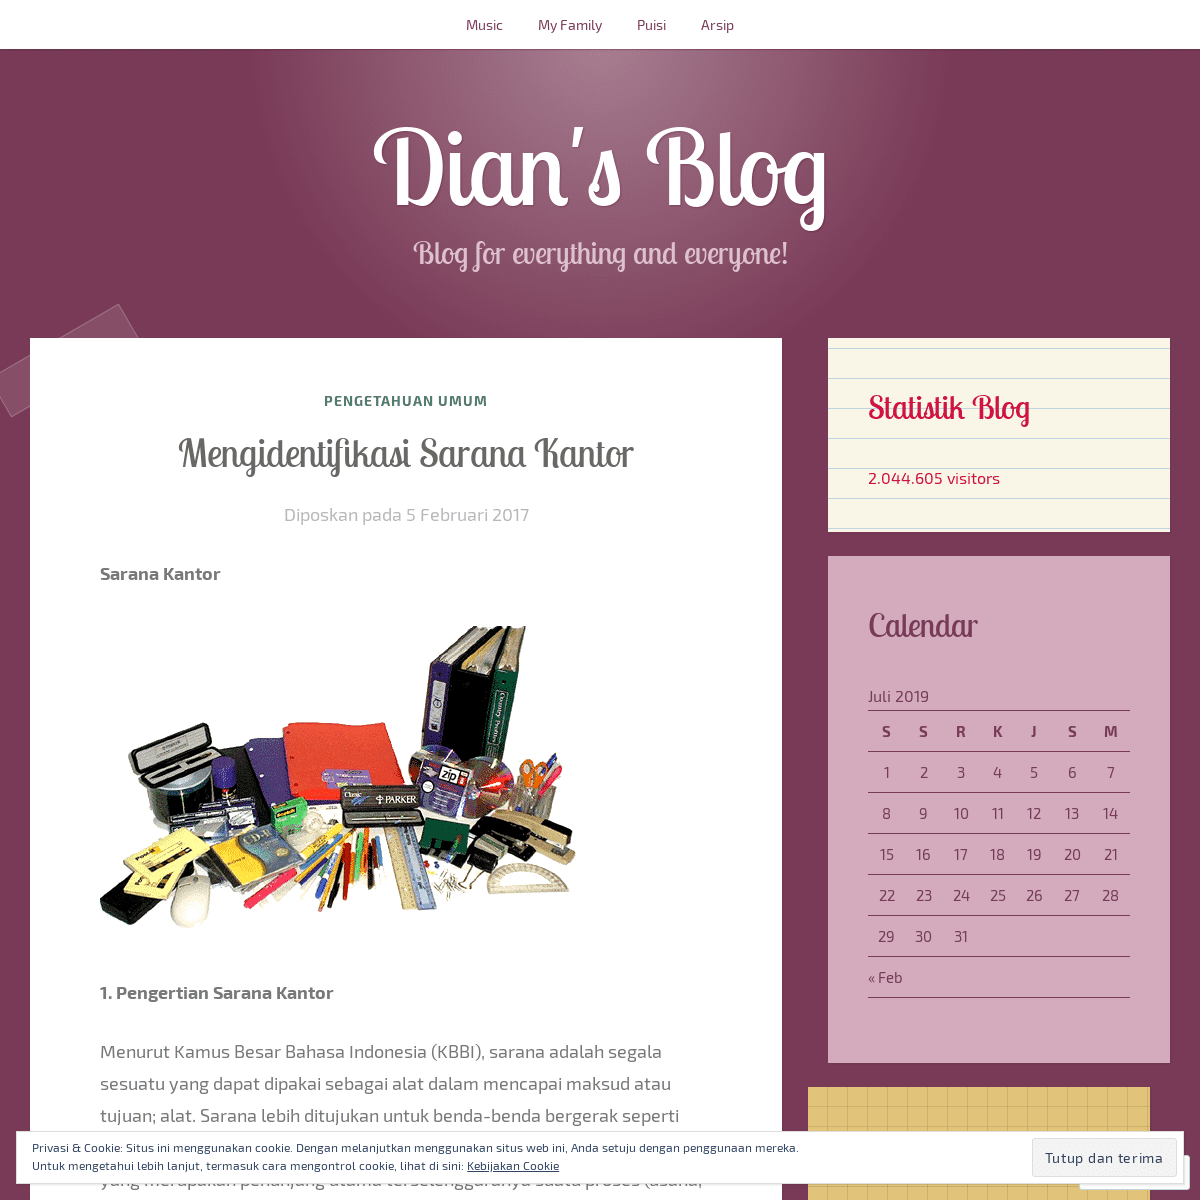 Dian's Blog